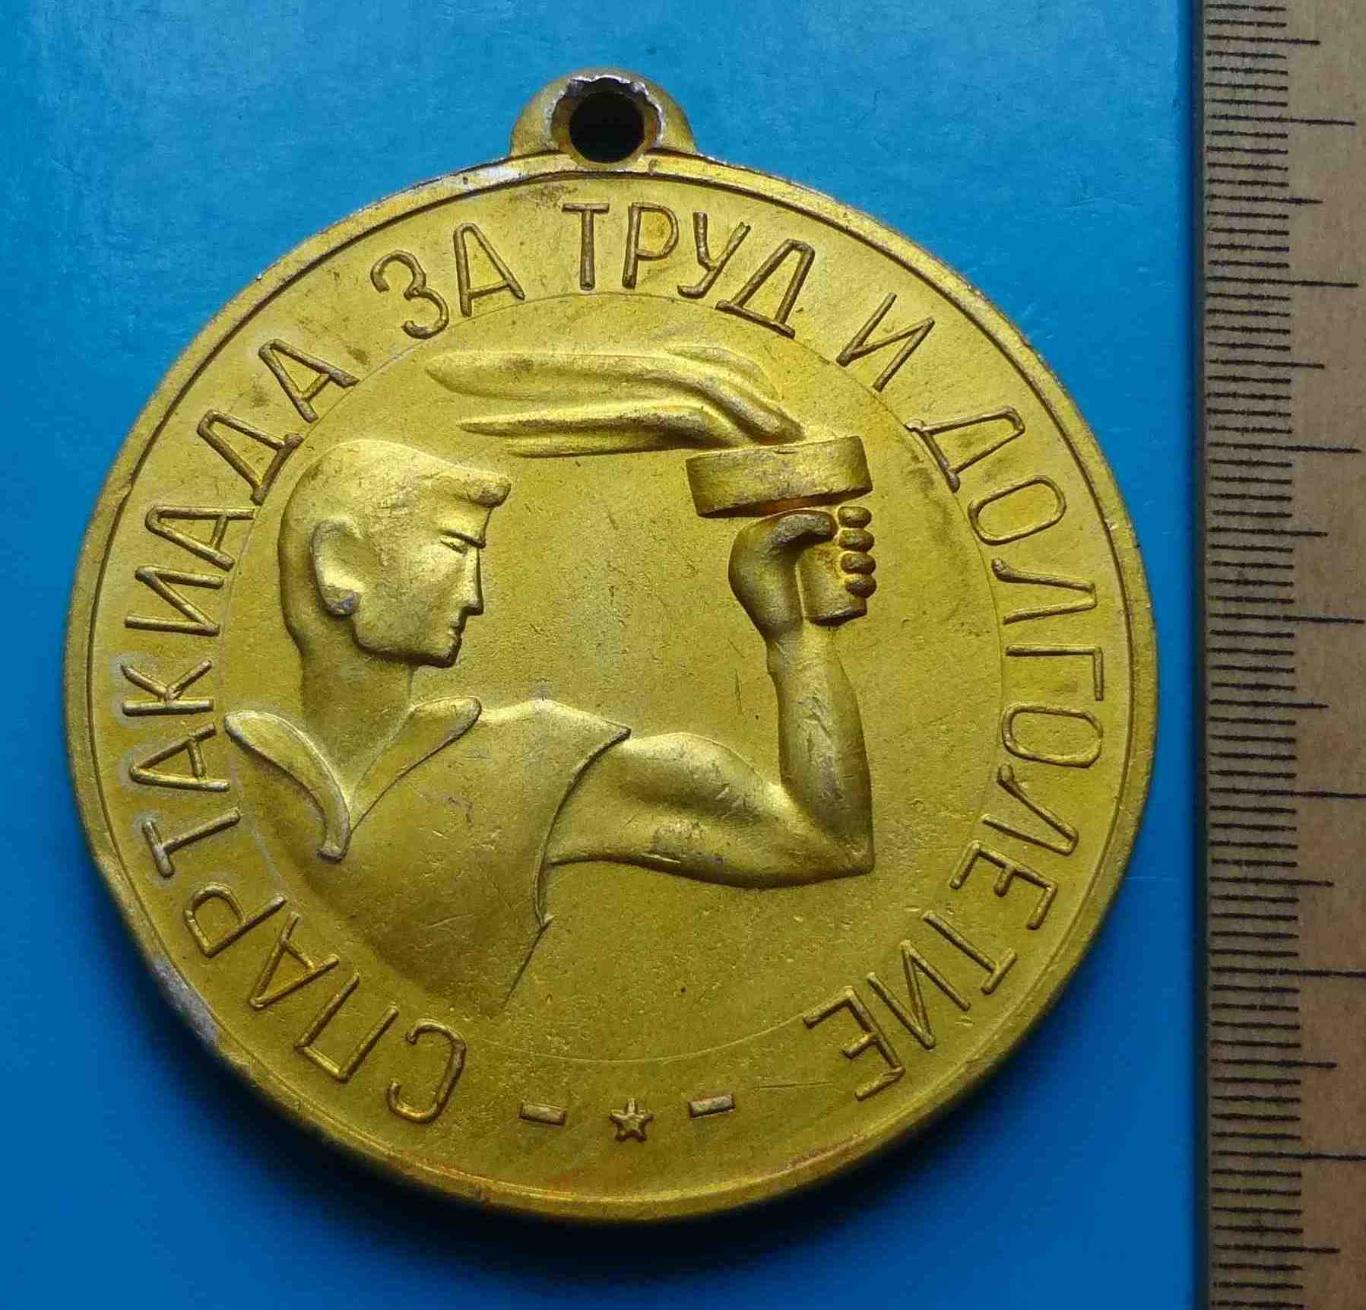 Спартакиада За труд и долголетие ККХВ 1969 чемпион Киевский комбинат химического